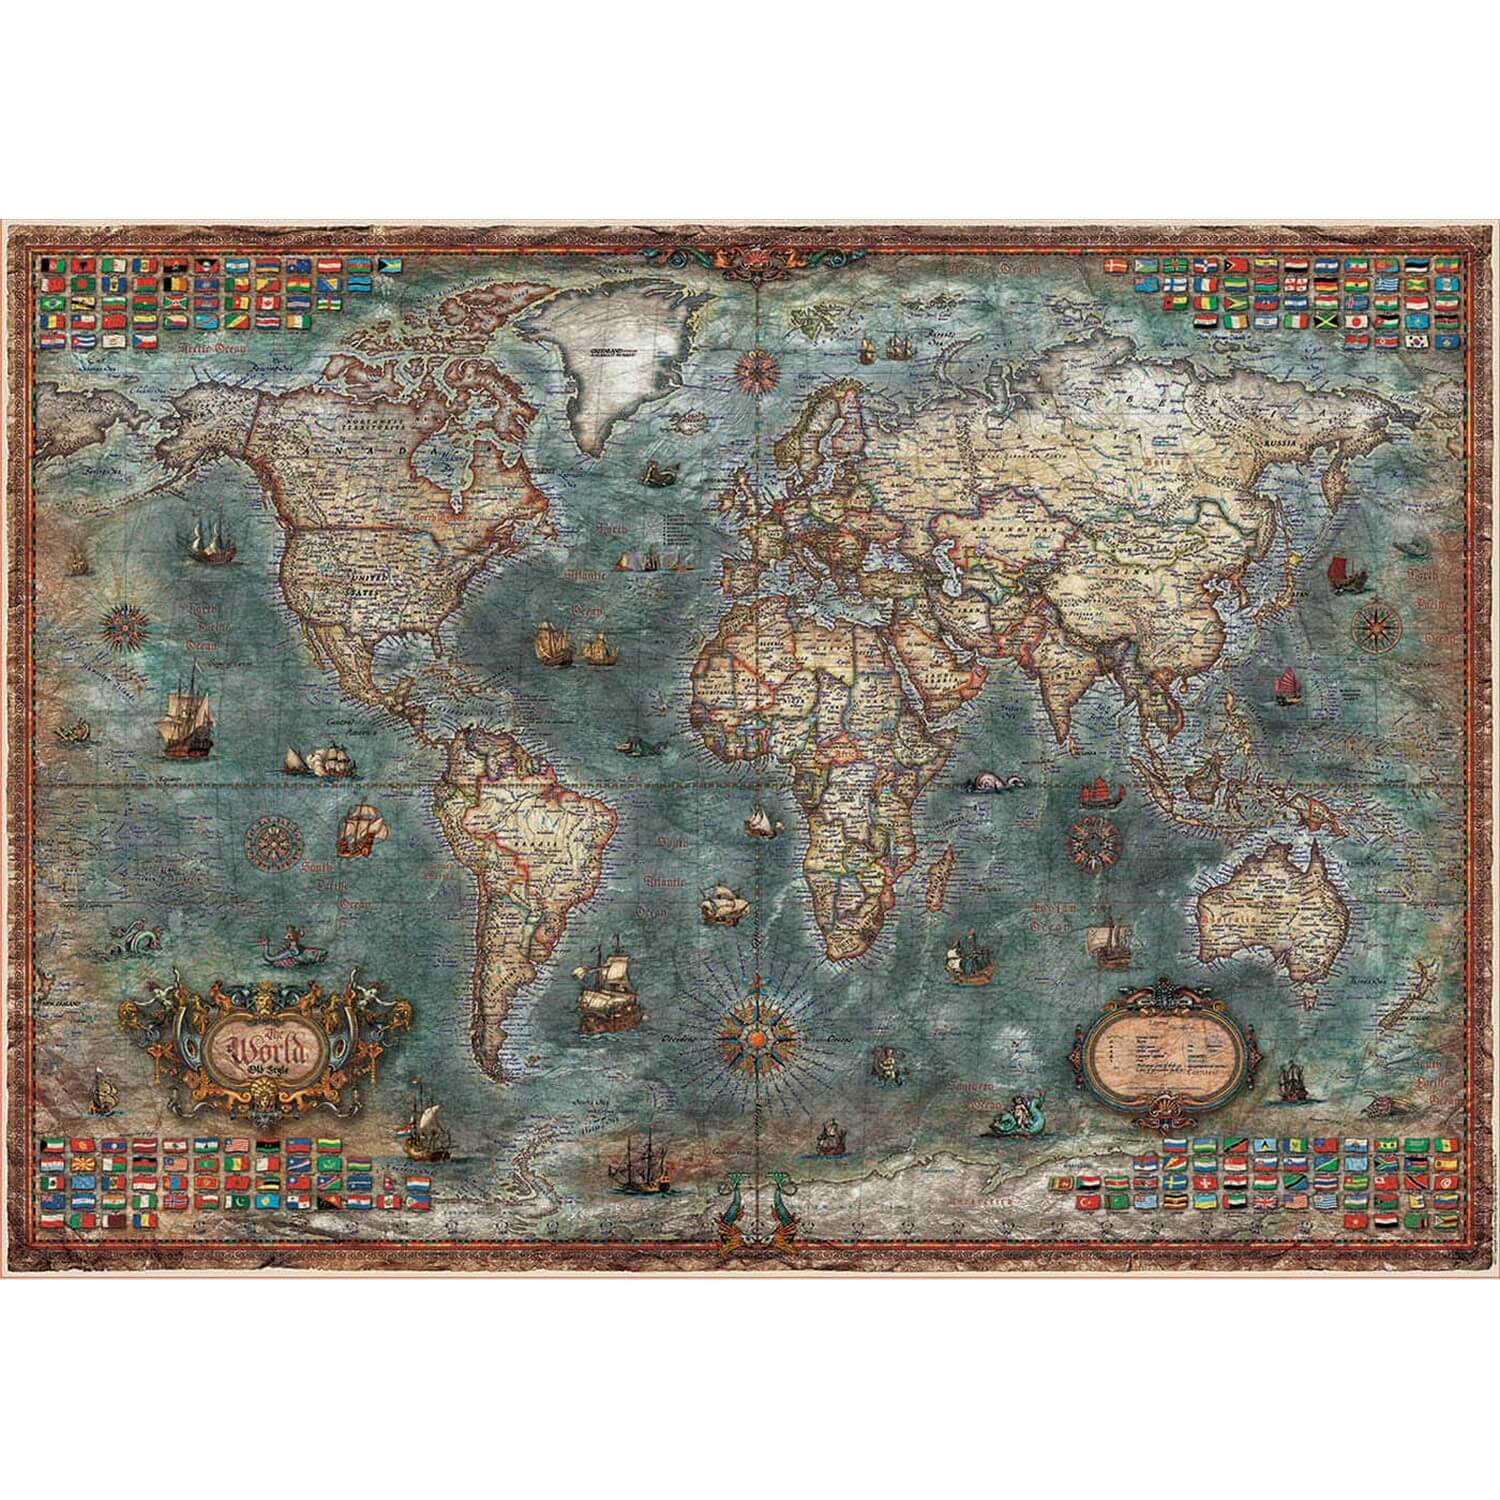 Puzzle adulte : pays : carte du monde - 1500 pieces - educa - Puzzle -  Achat & prix